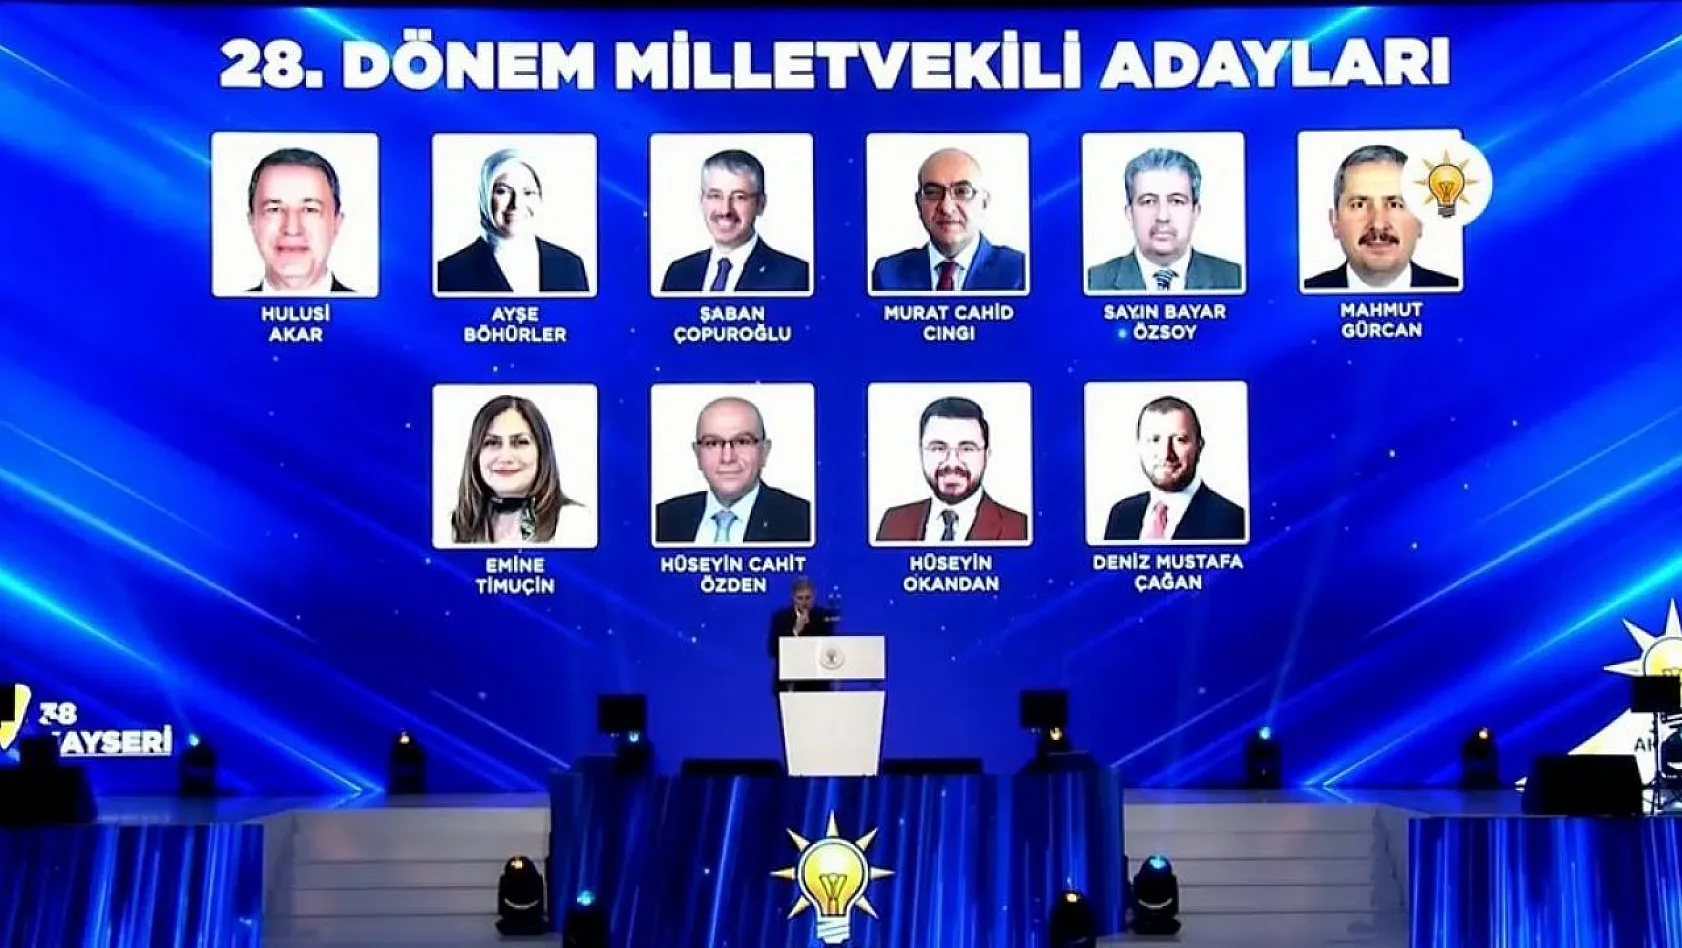 AK Parti'nin adayları tanıtıldı!